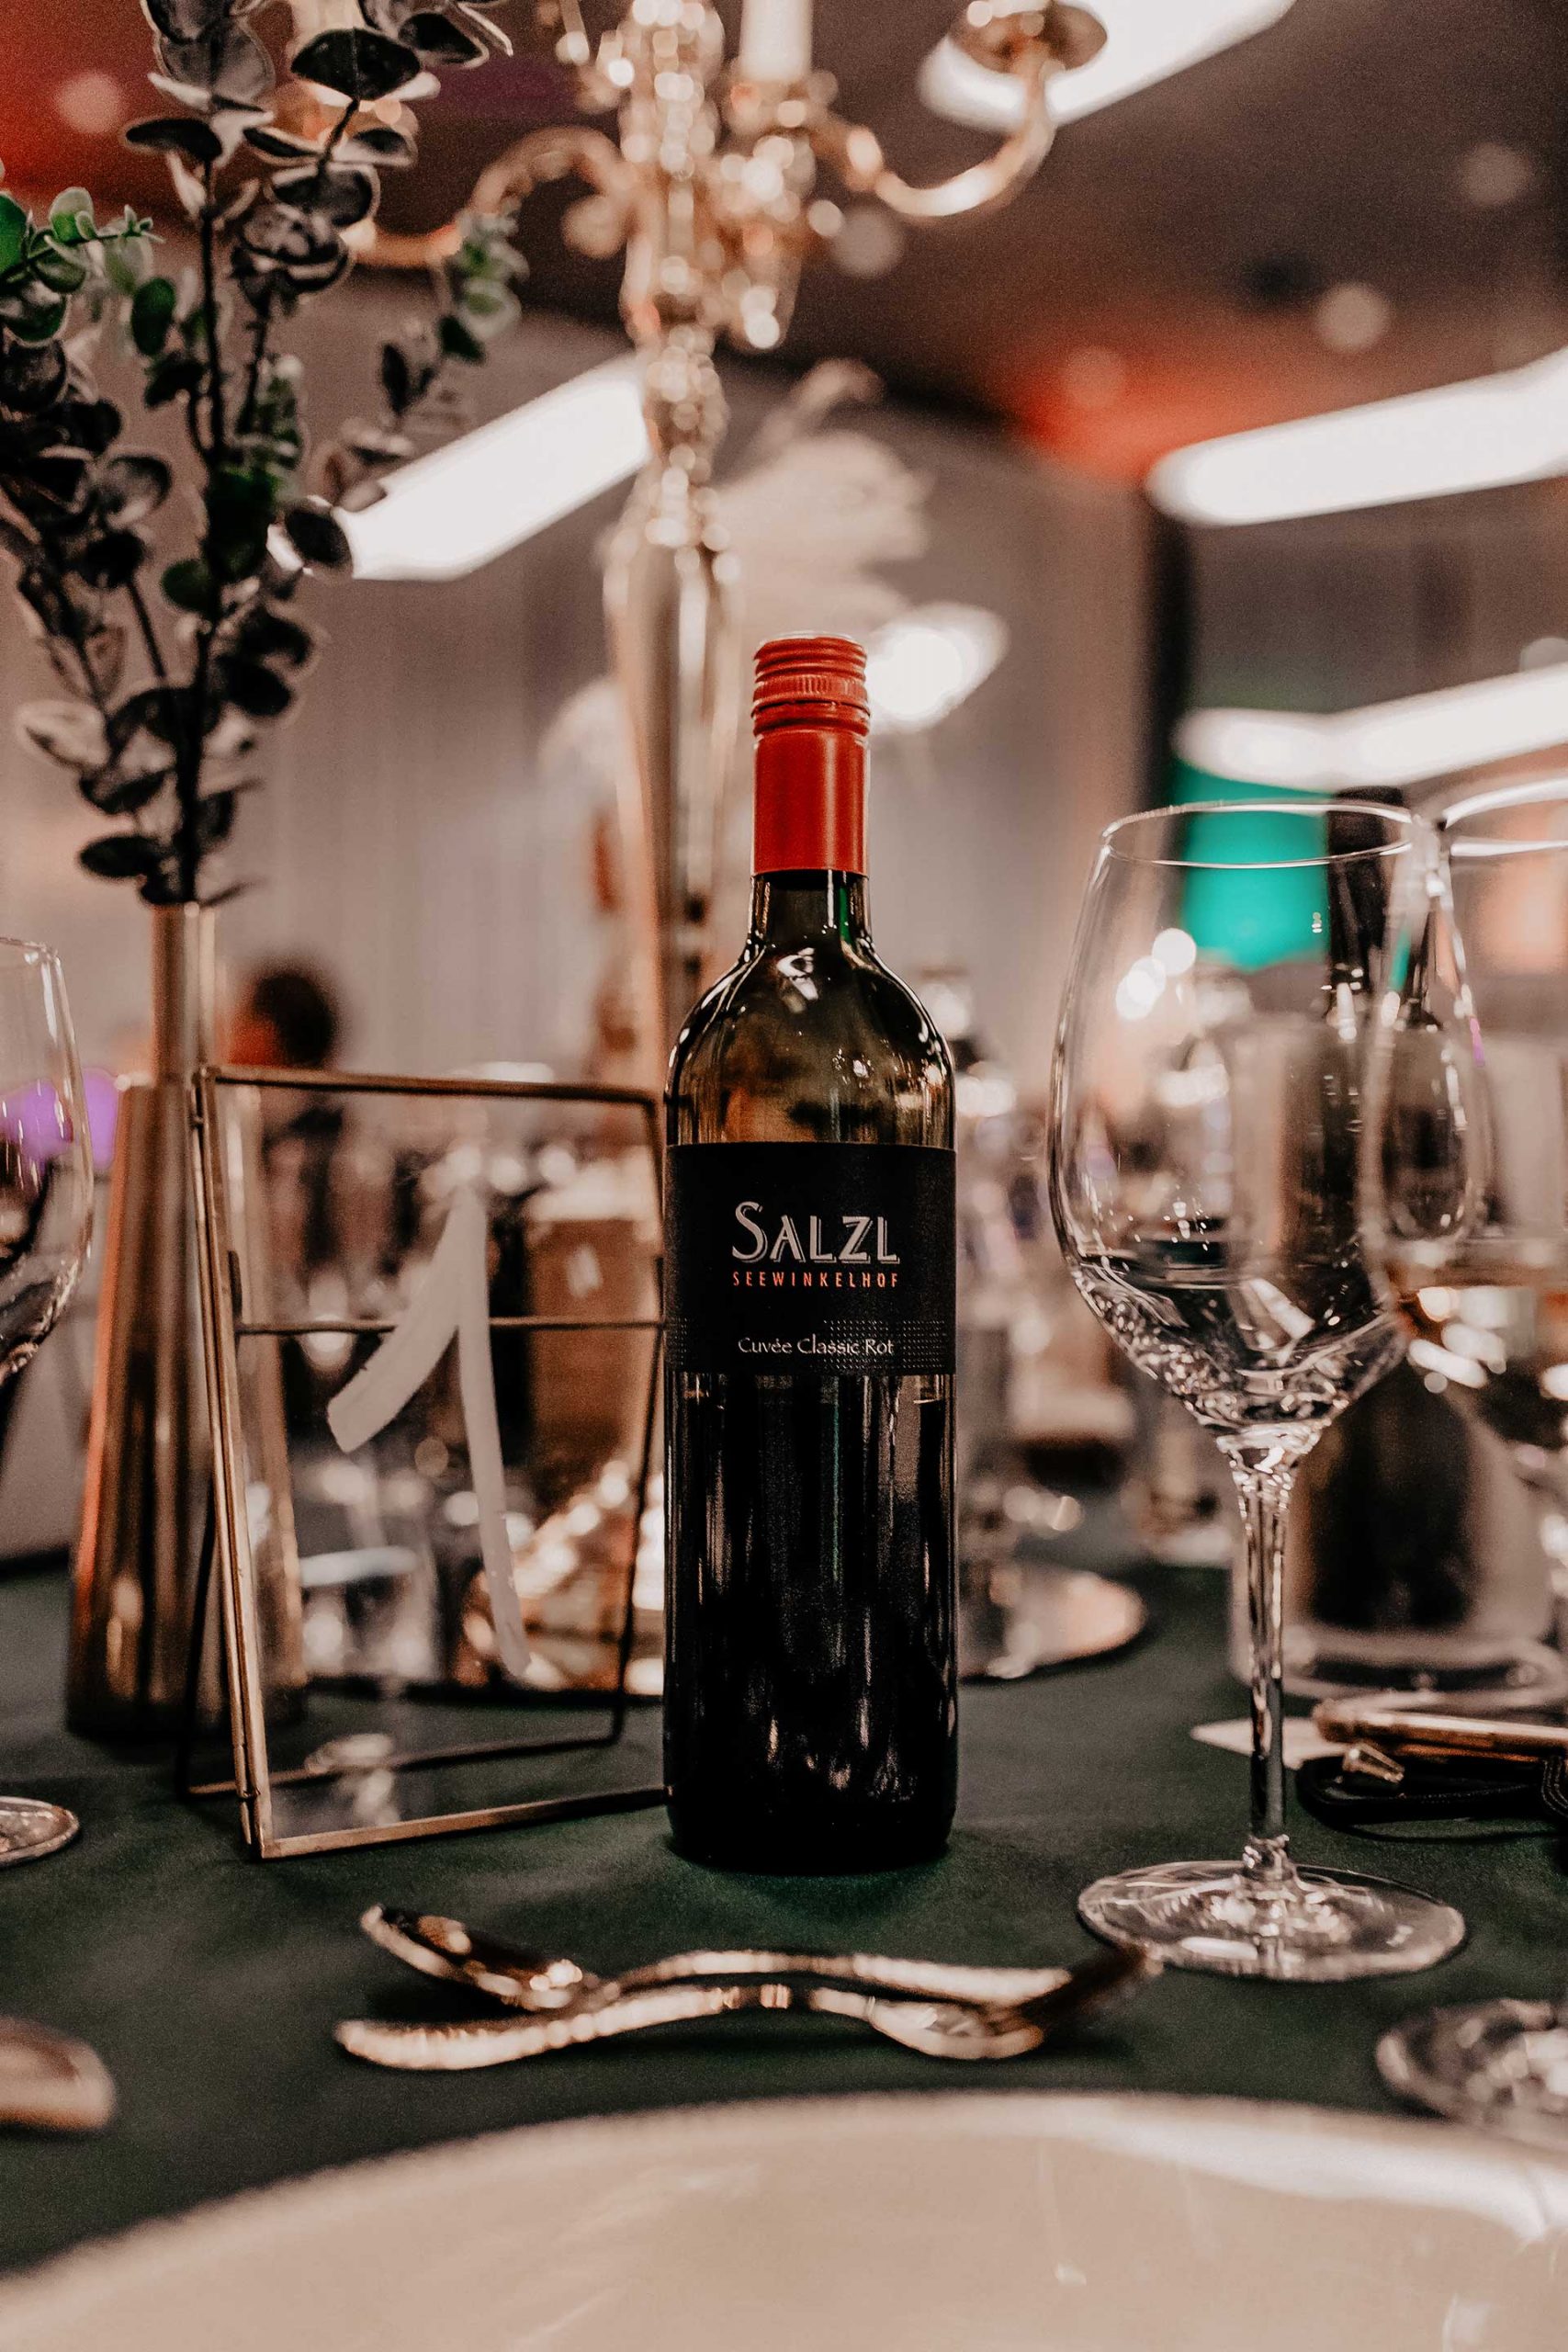 Wie entscheidet man sich für den perfekten Hochzeitswein, wenn man im Grunde nicht viel Ahnung von Wein hat? Wir trinken zwar gerne ab und zu Mal ein Gläschen Wein zum Essen, das war's dann aber auch schon wieder. Ich nehme dich heute mit auf unsere kleine Reise und erzähle dir, wie wir die "Welcher Wein für die Hochzeit?"-Frage beantwortet haben. www.whoismocca.com #hochzeitswein #herbsthochzeit #rotwein #weisswein